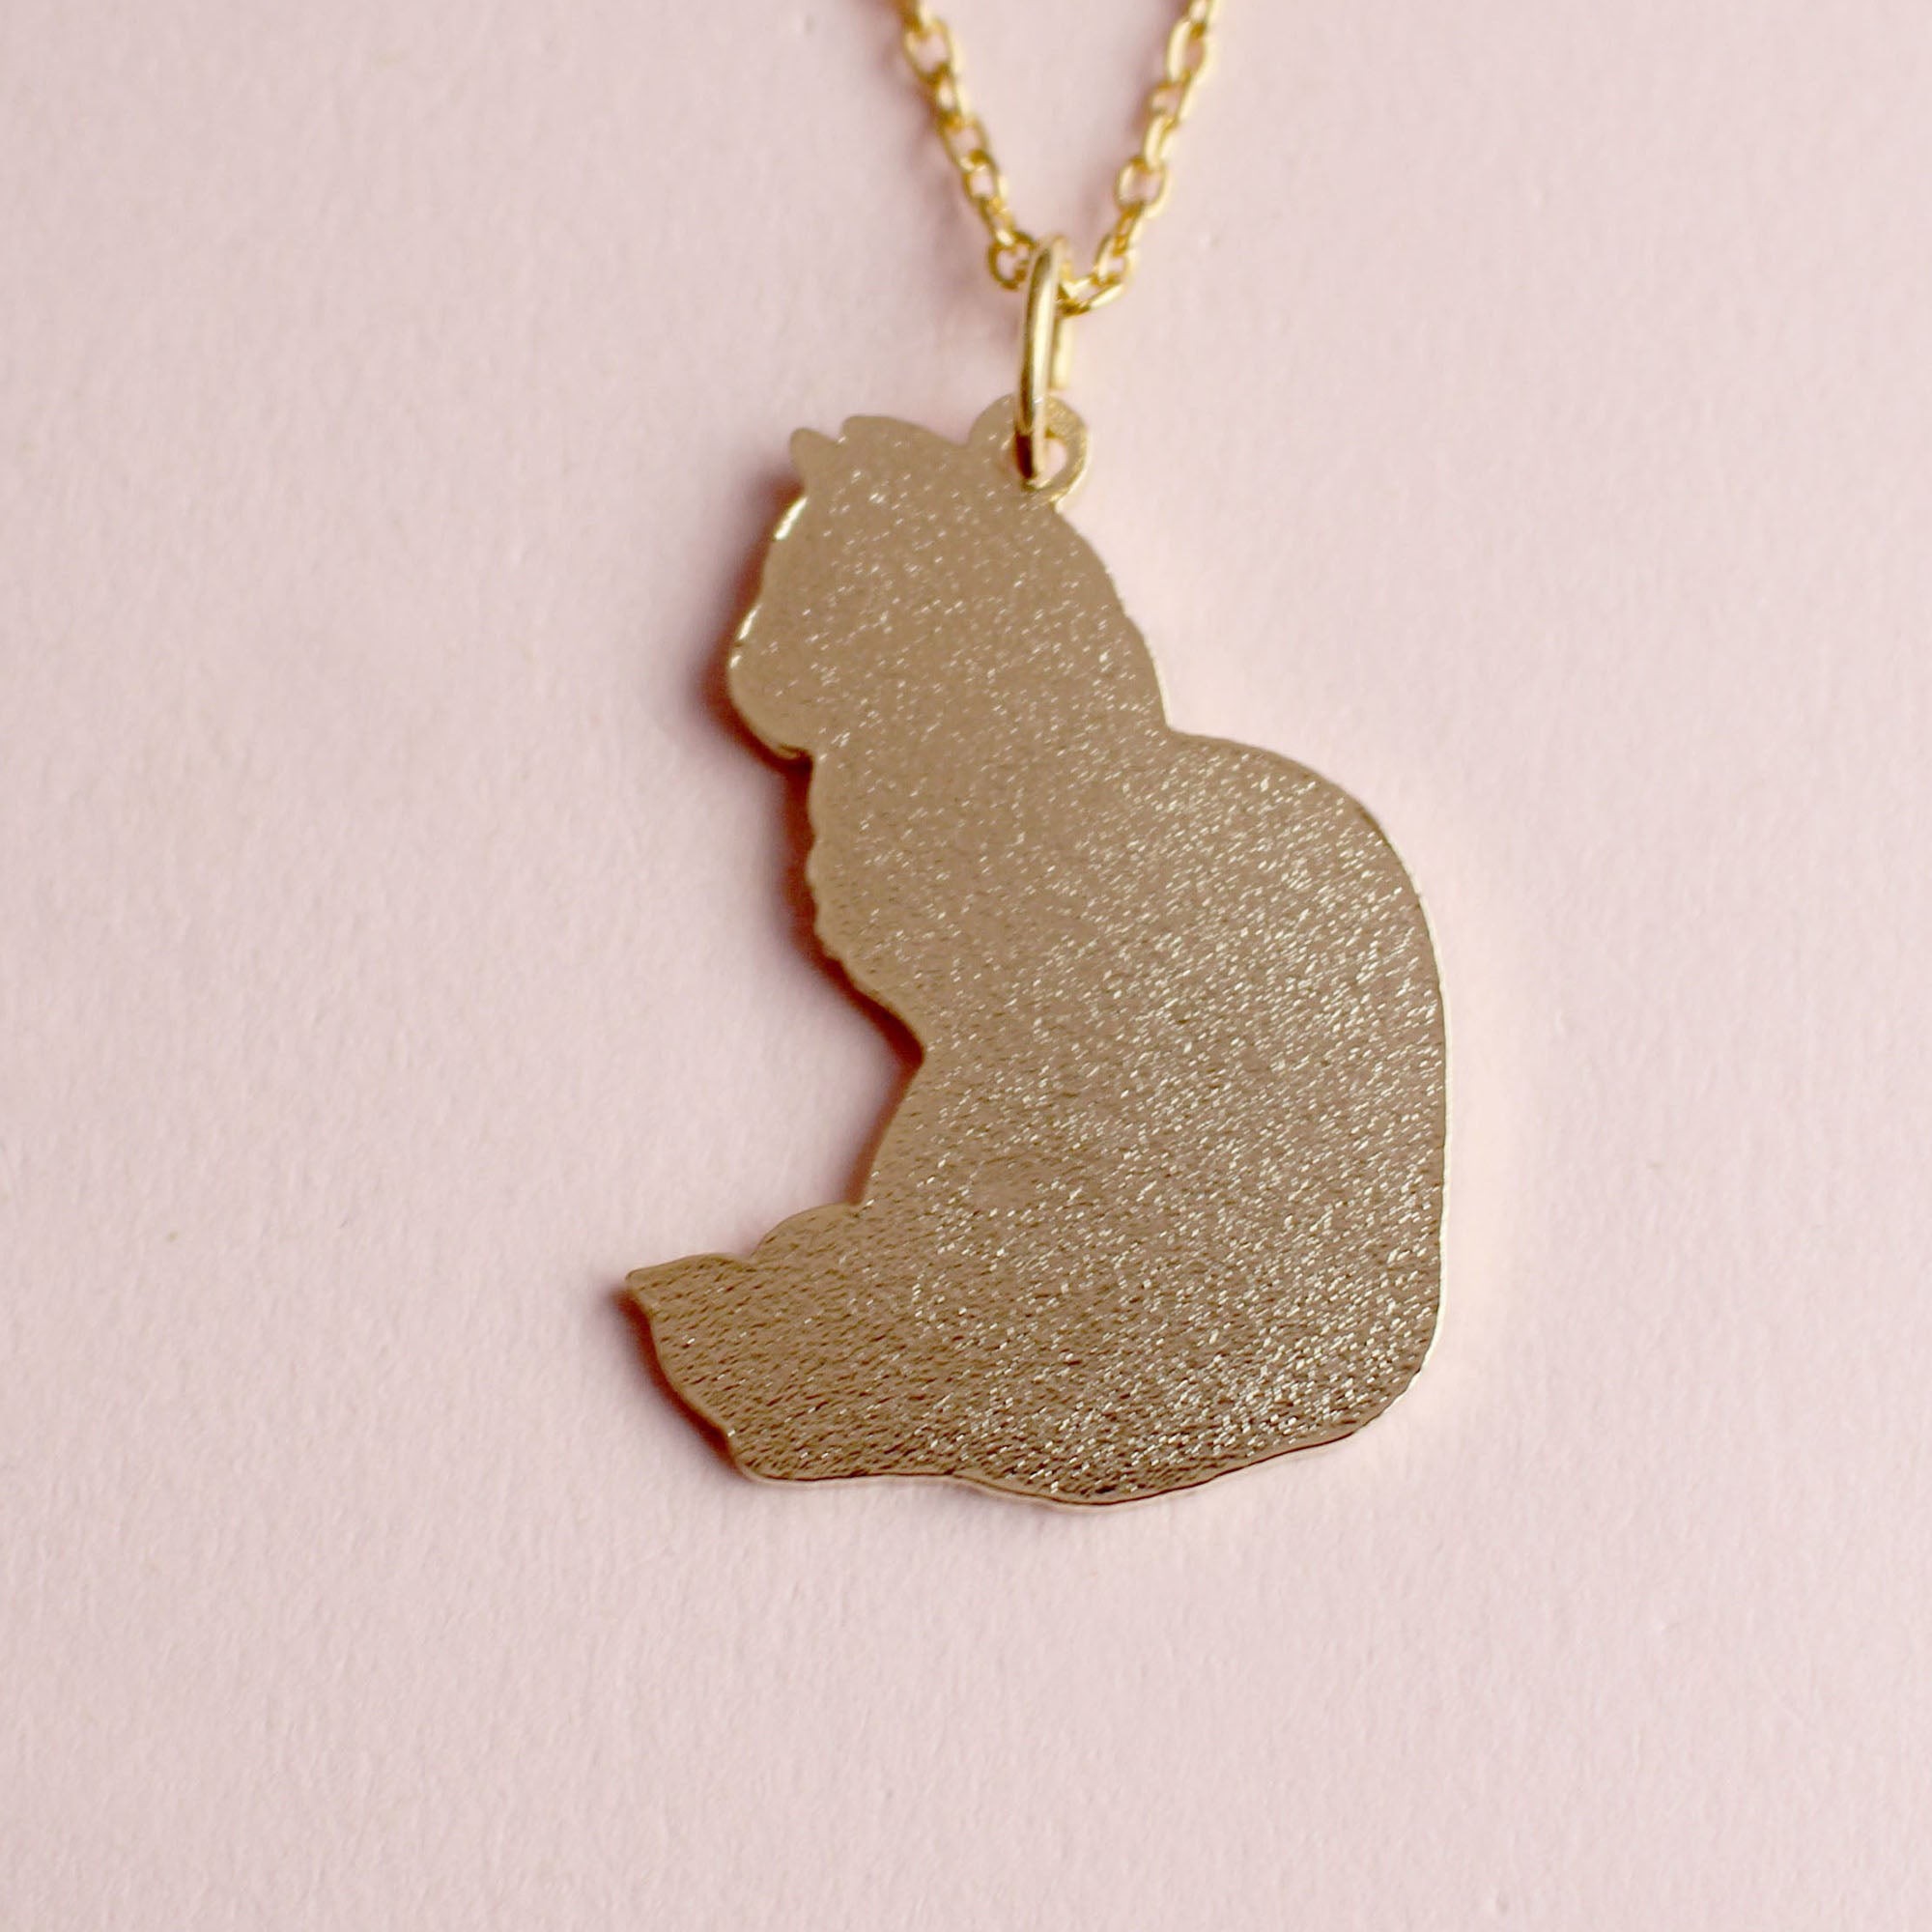 Mini Cat Head Silhouette Necklace in 14K Gold | Zales